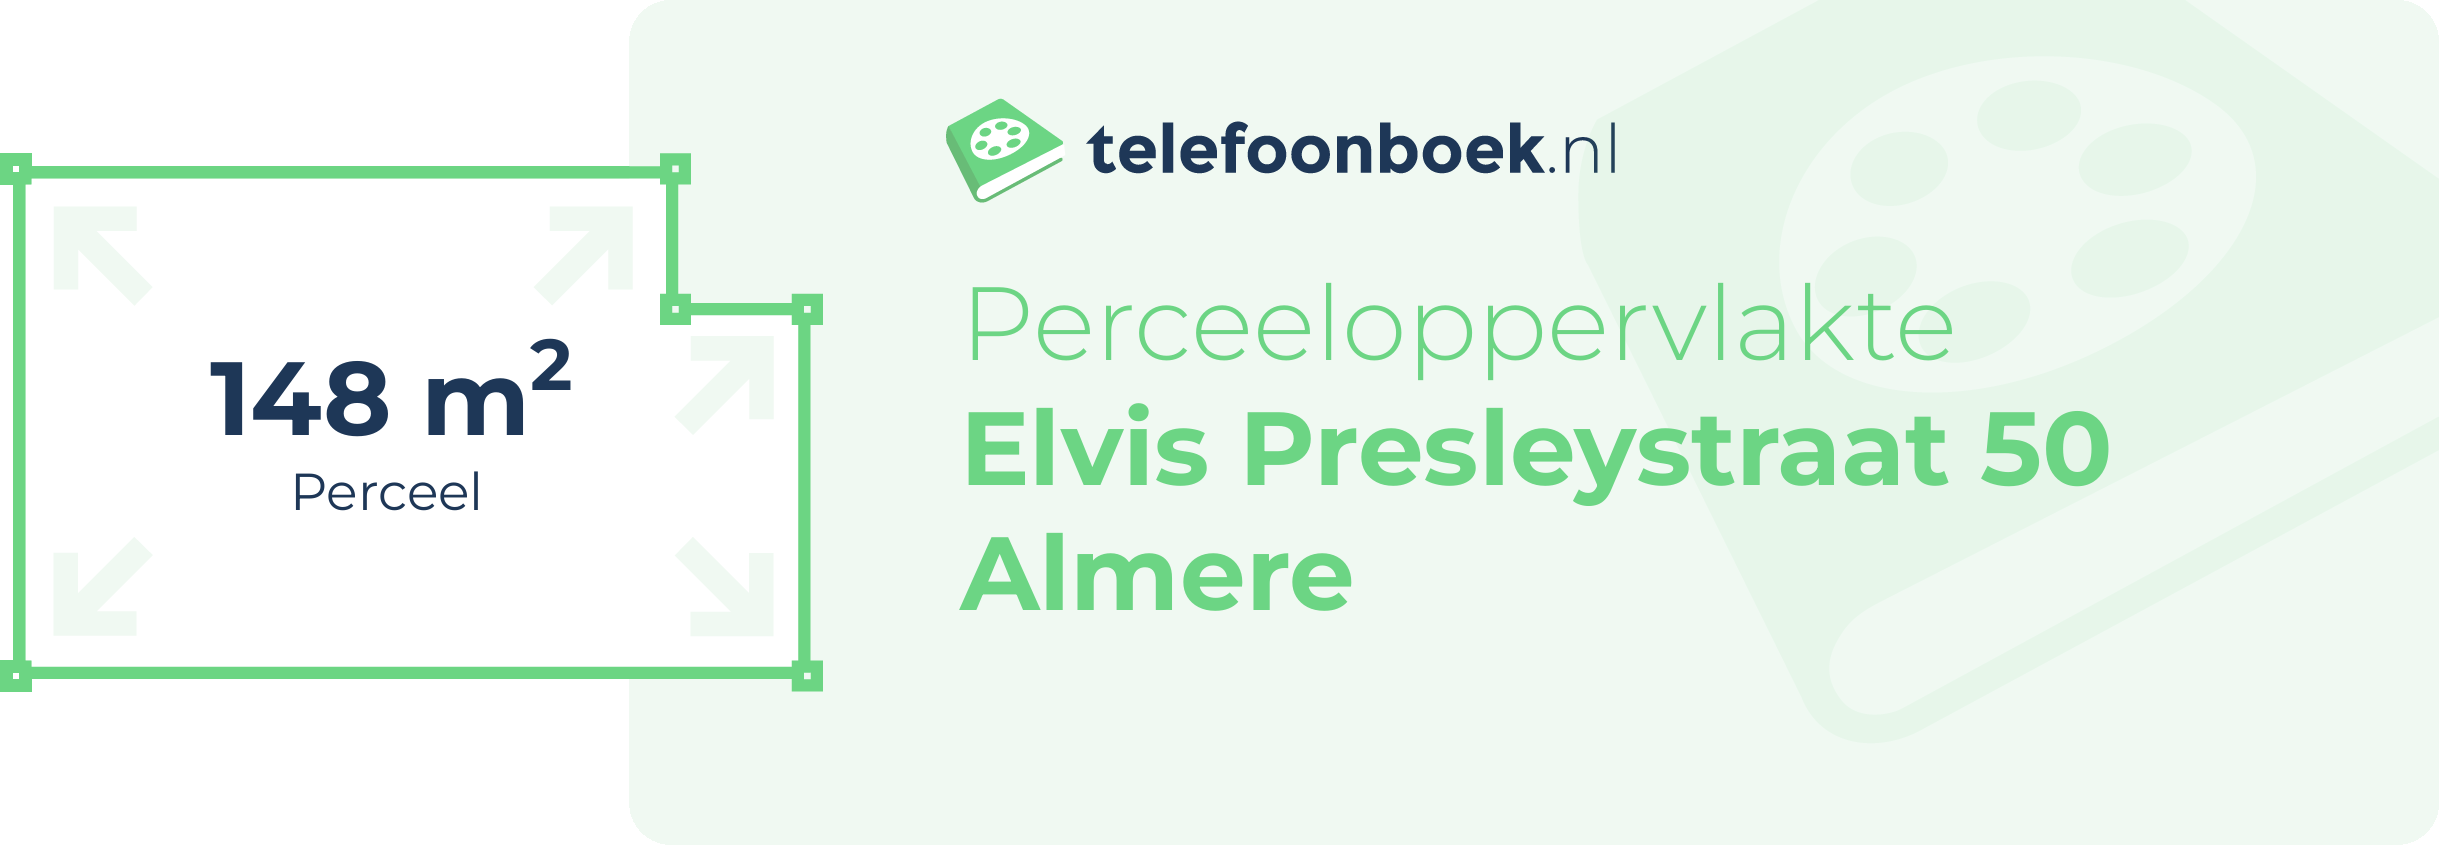 Perceeloppervlakte Elvis Presleystraat 50 Almere